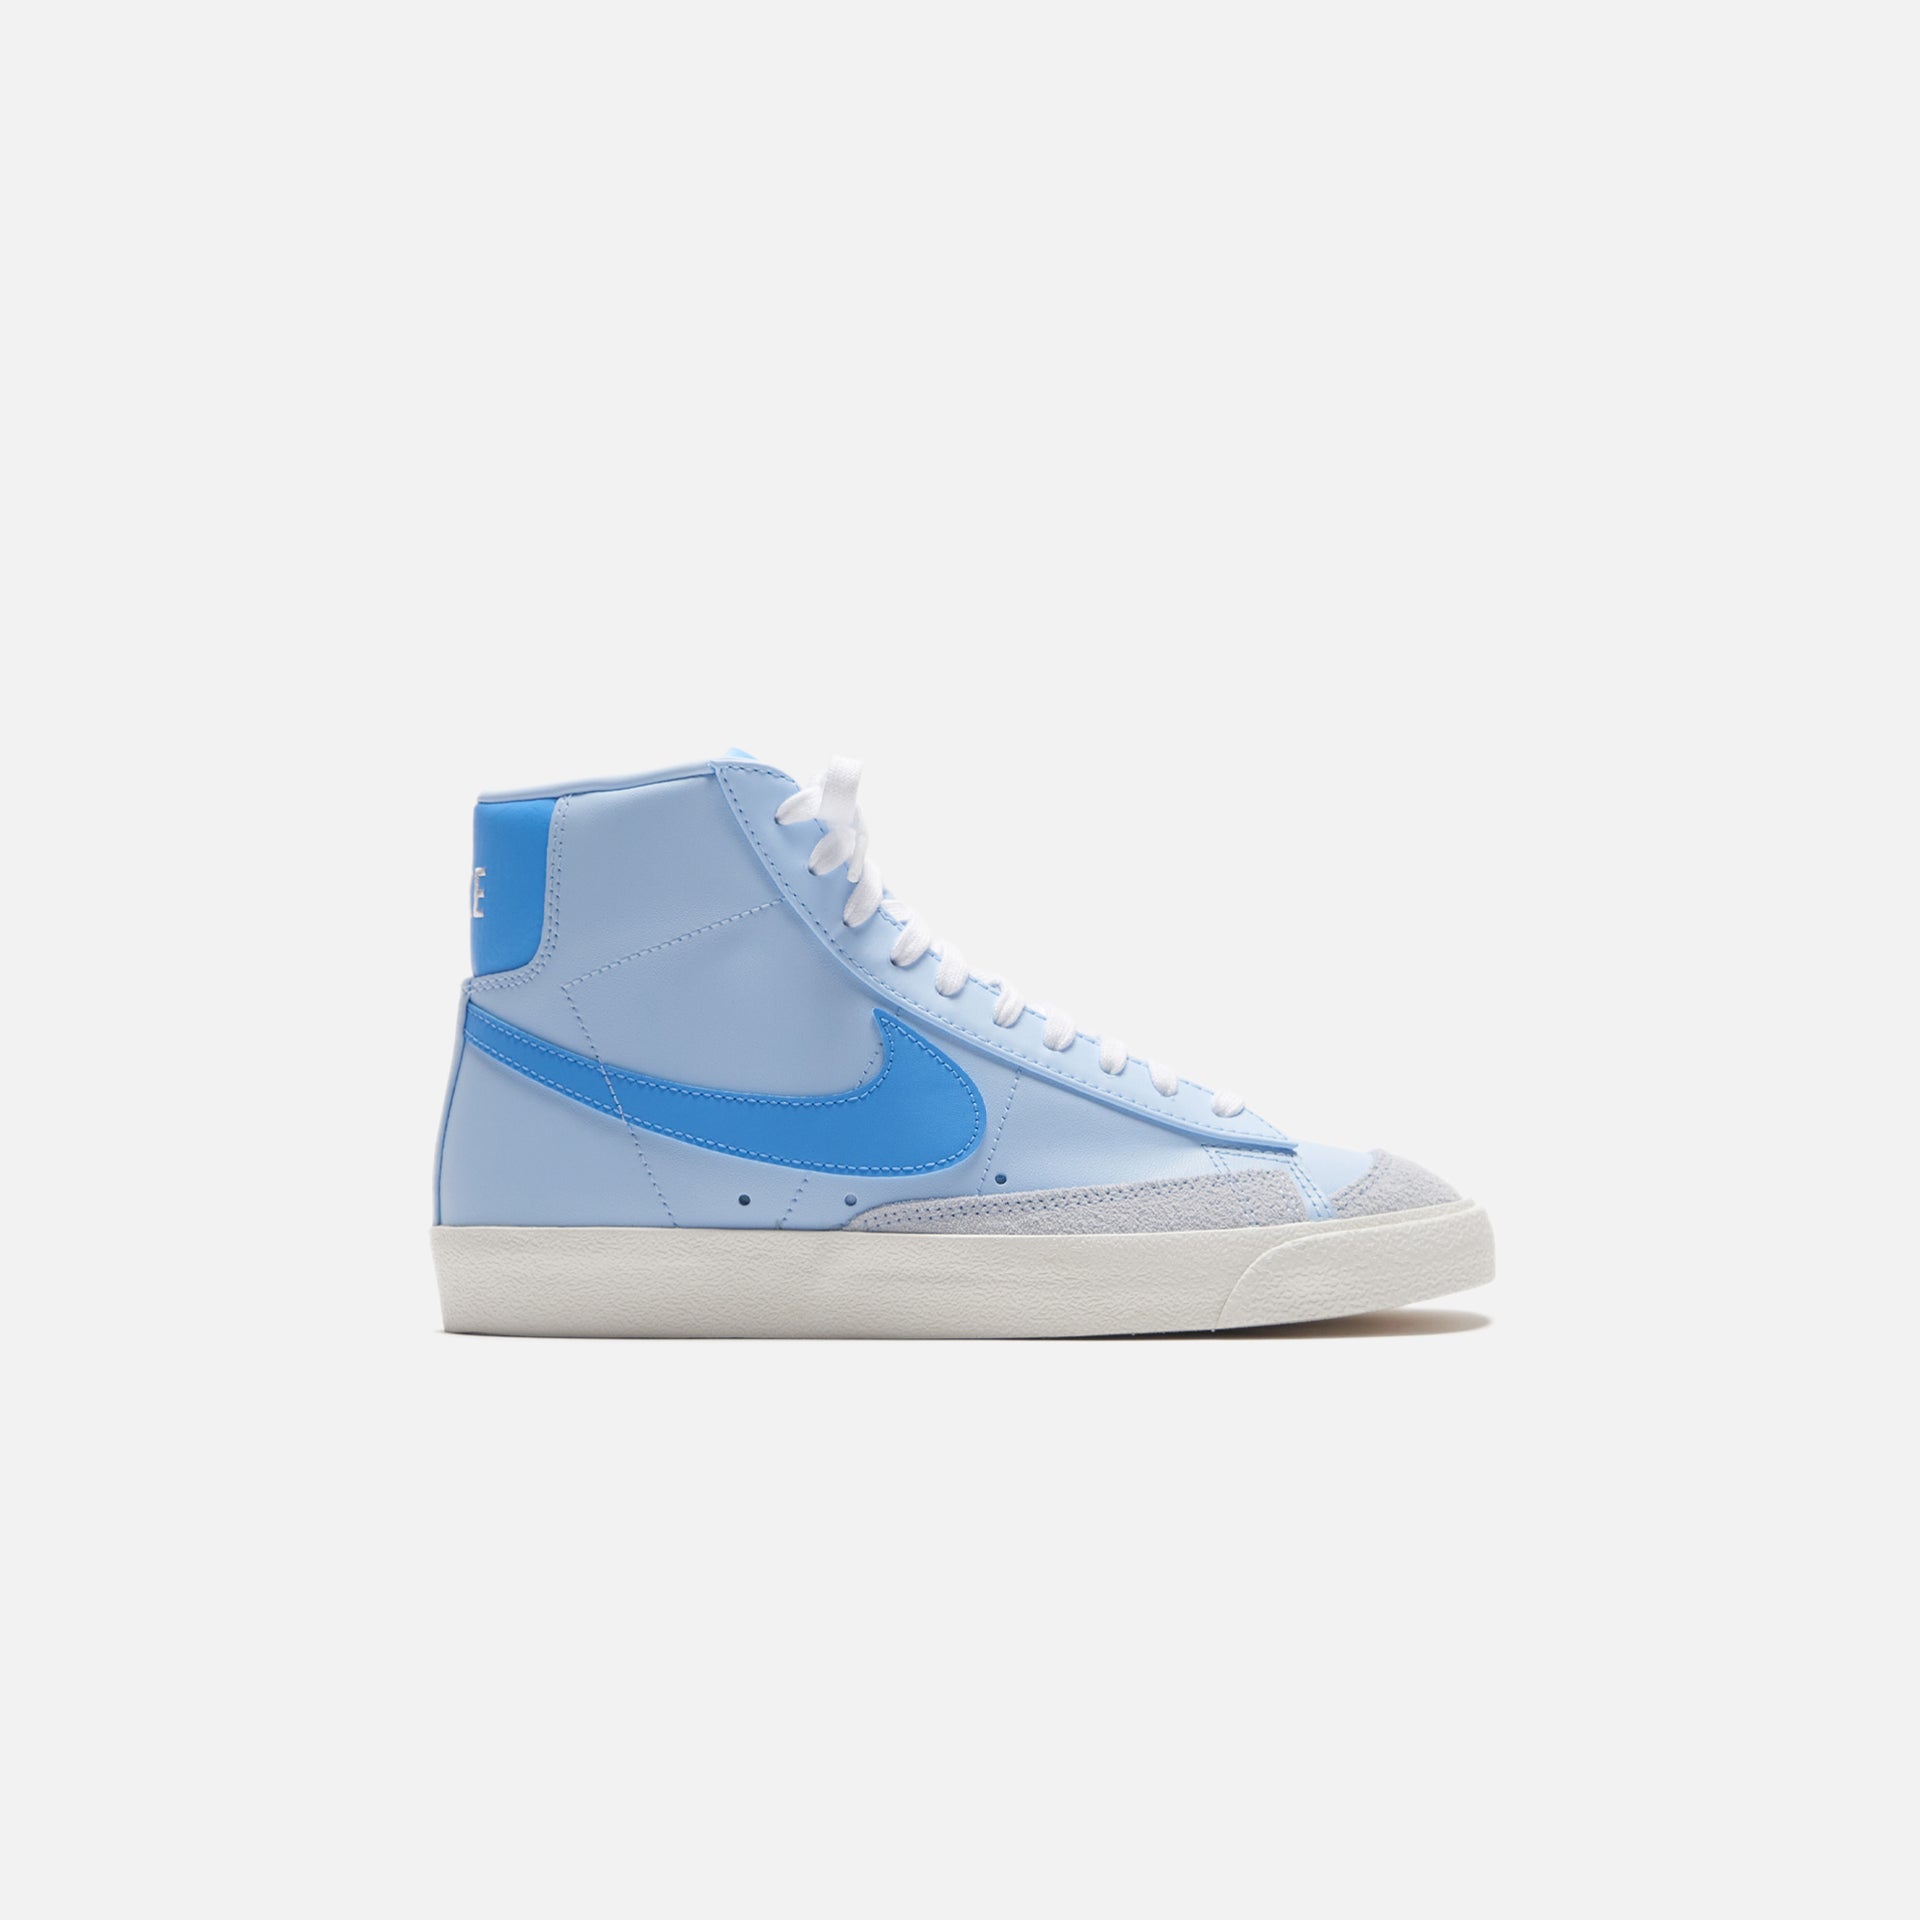 Nike Blazer Mid `77 VNTG - Celestine Blue / University Blue